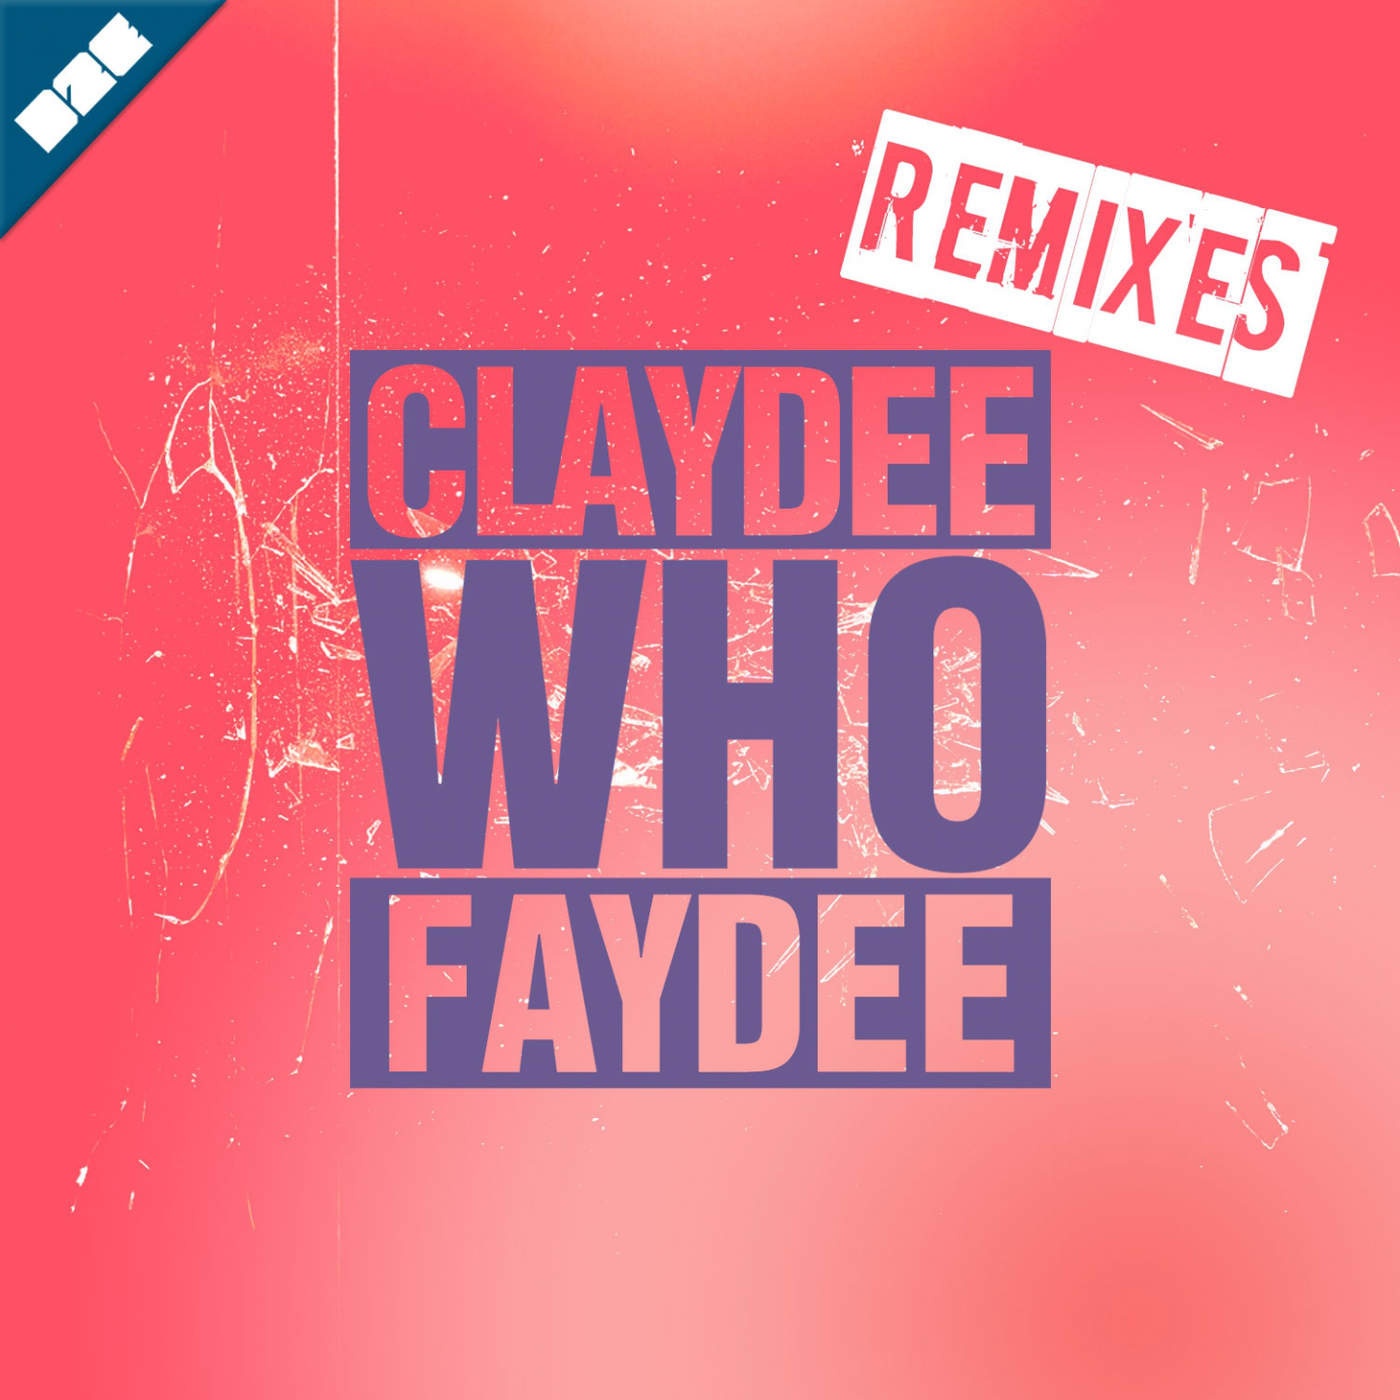 Who (Remixes)